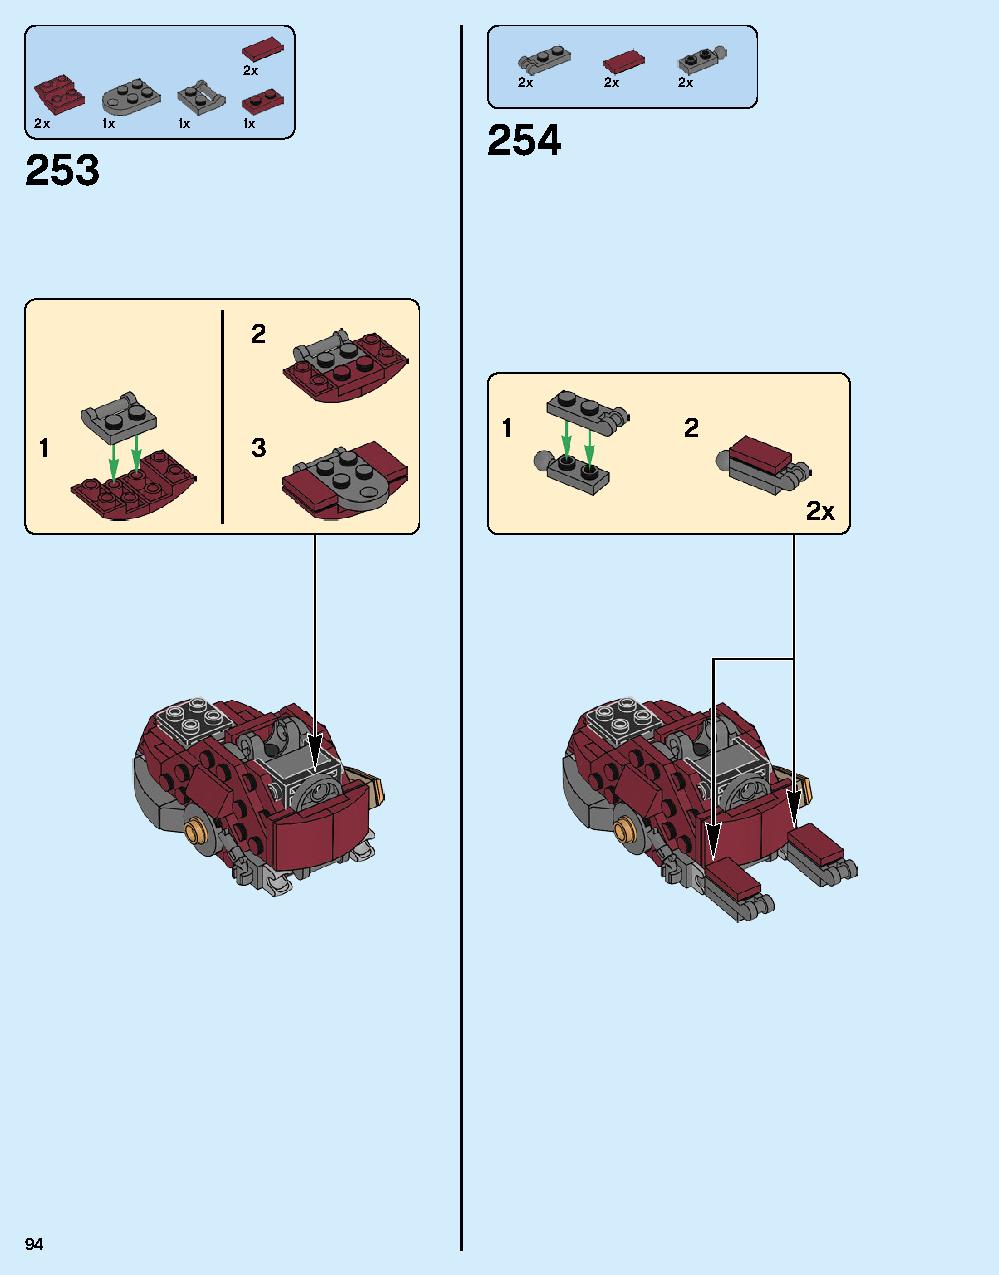 ハルクバスター：ウルトロン・エディション 76105 レゴの商品情報 レゴの説明書・組立方法 94 page